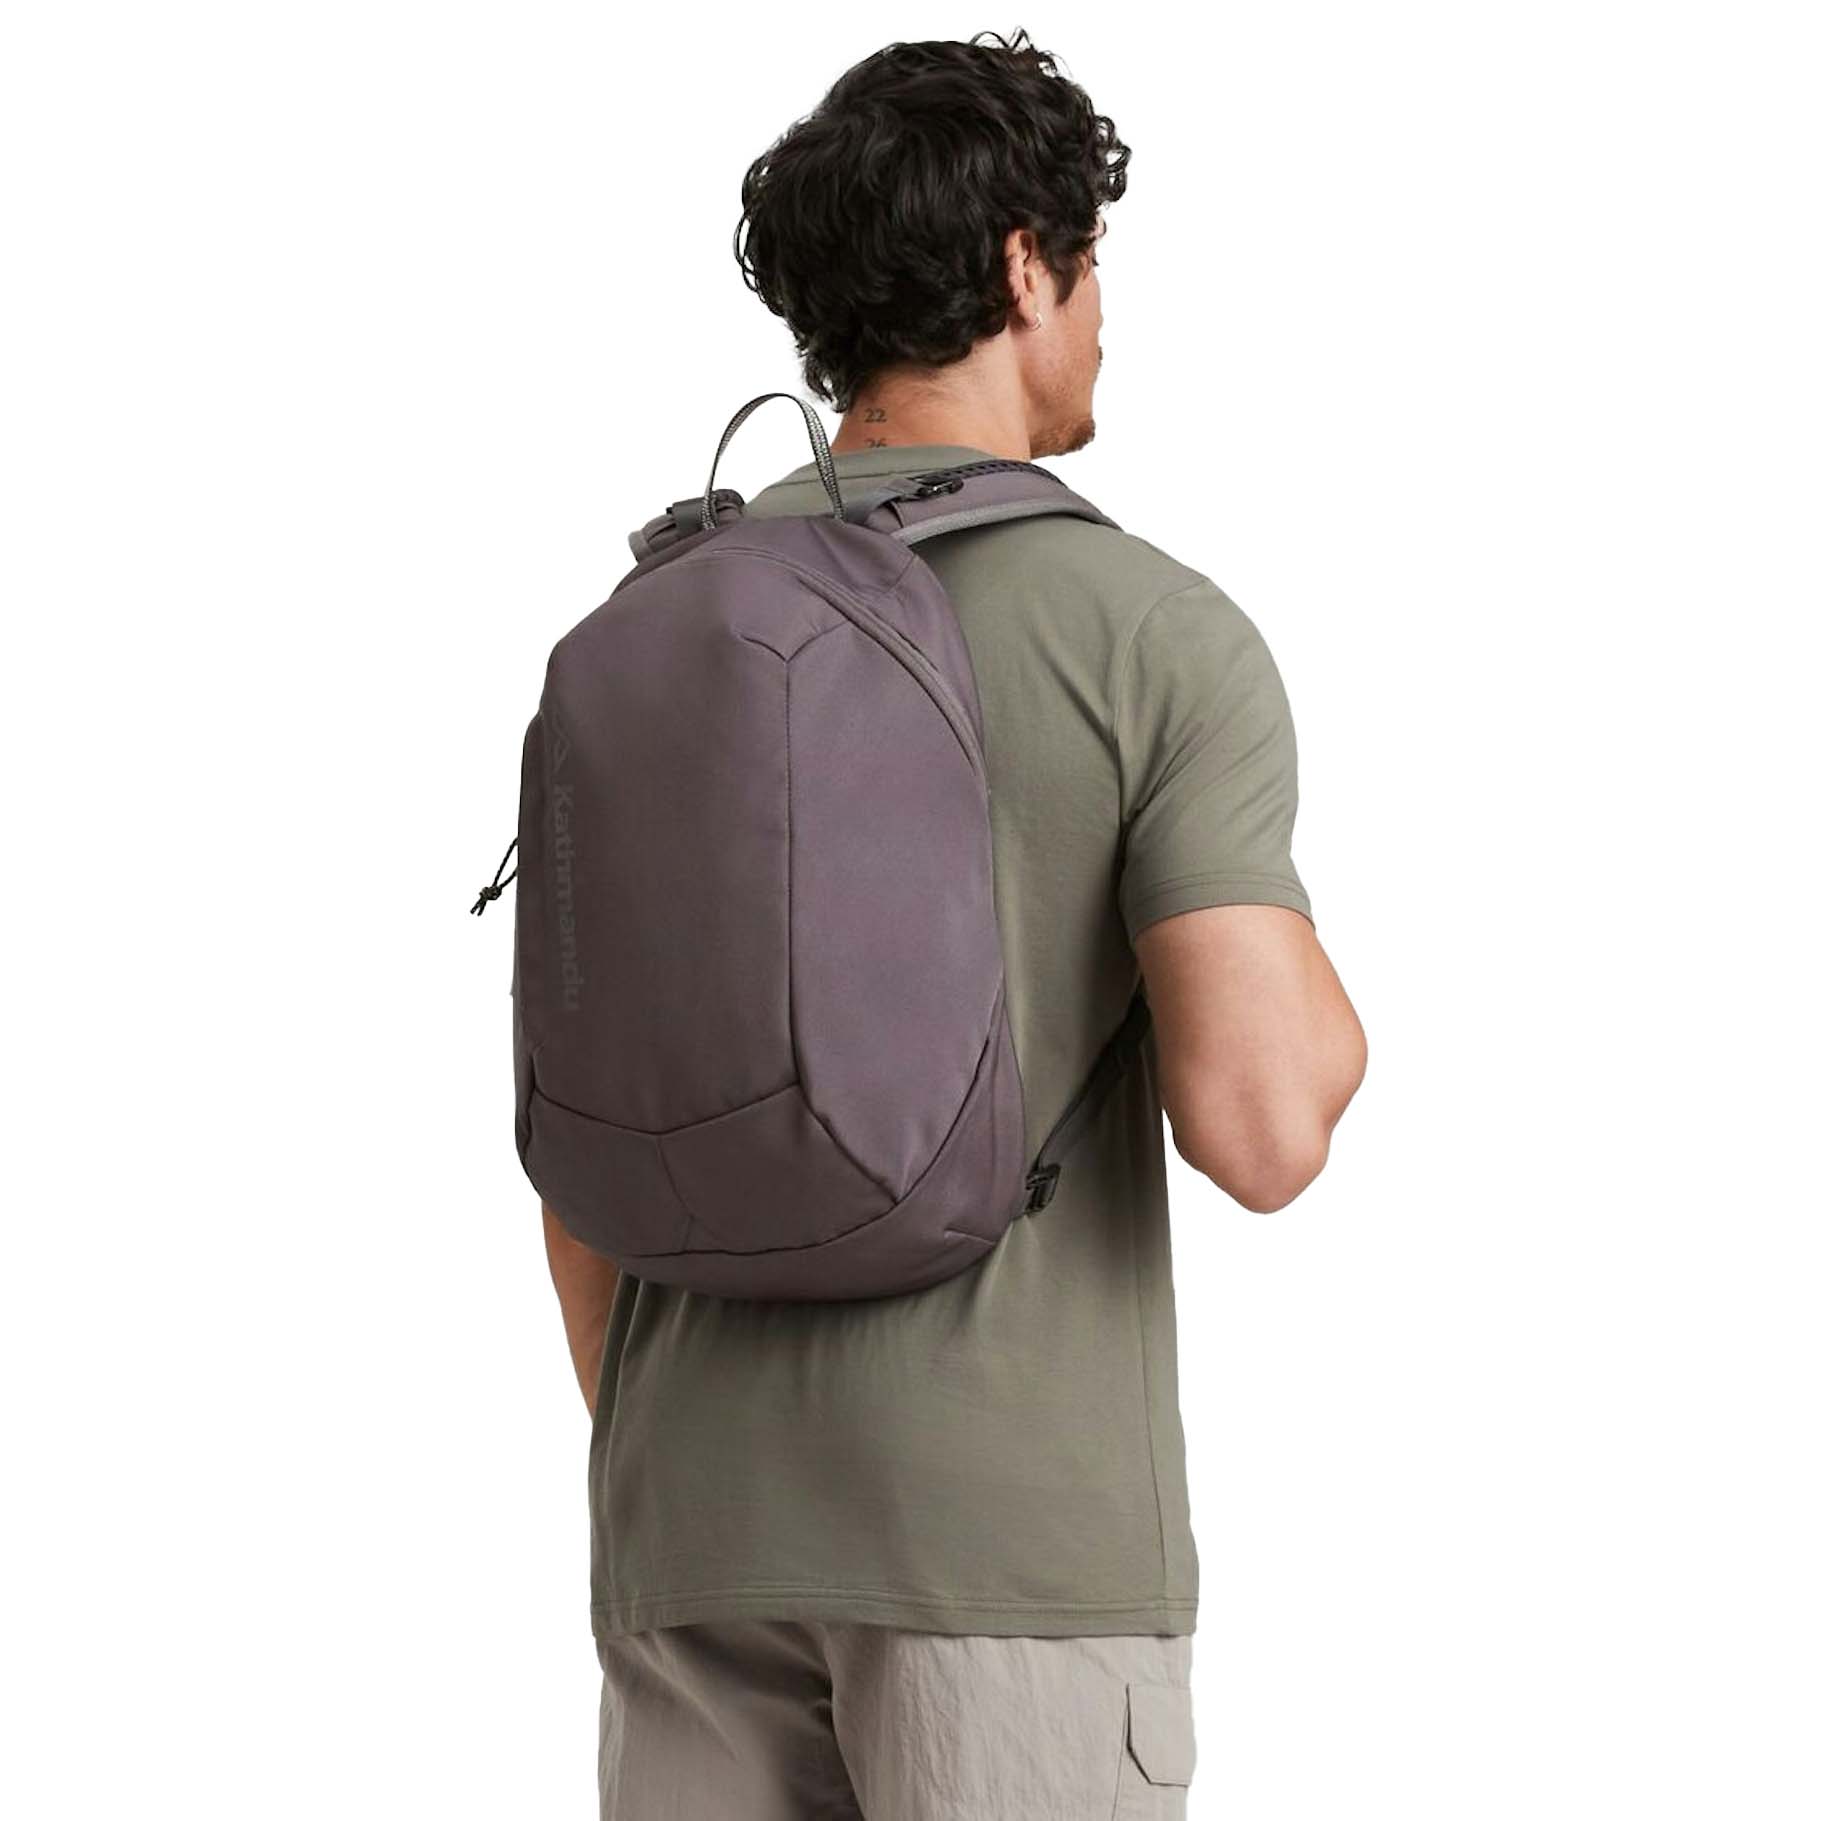 Kathmandu Gluon Beyond Pack 18L Hiking Backpack